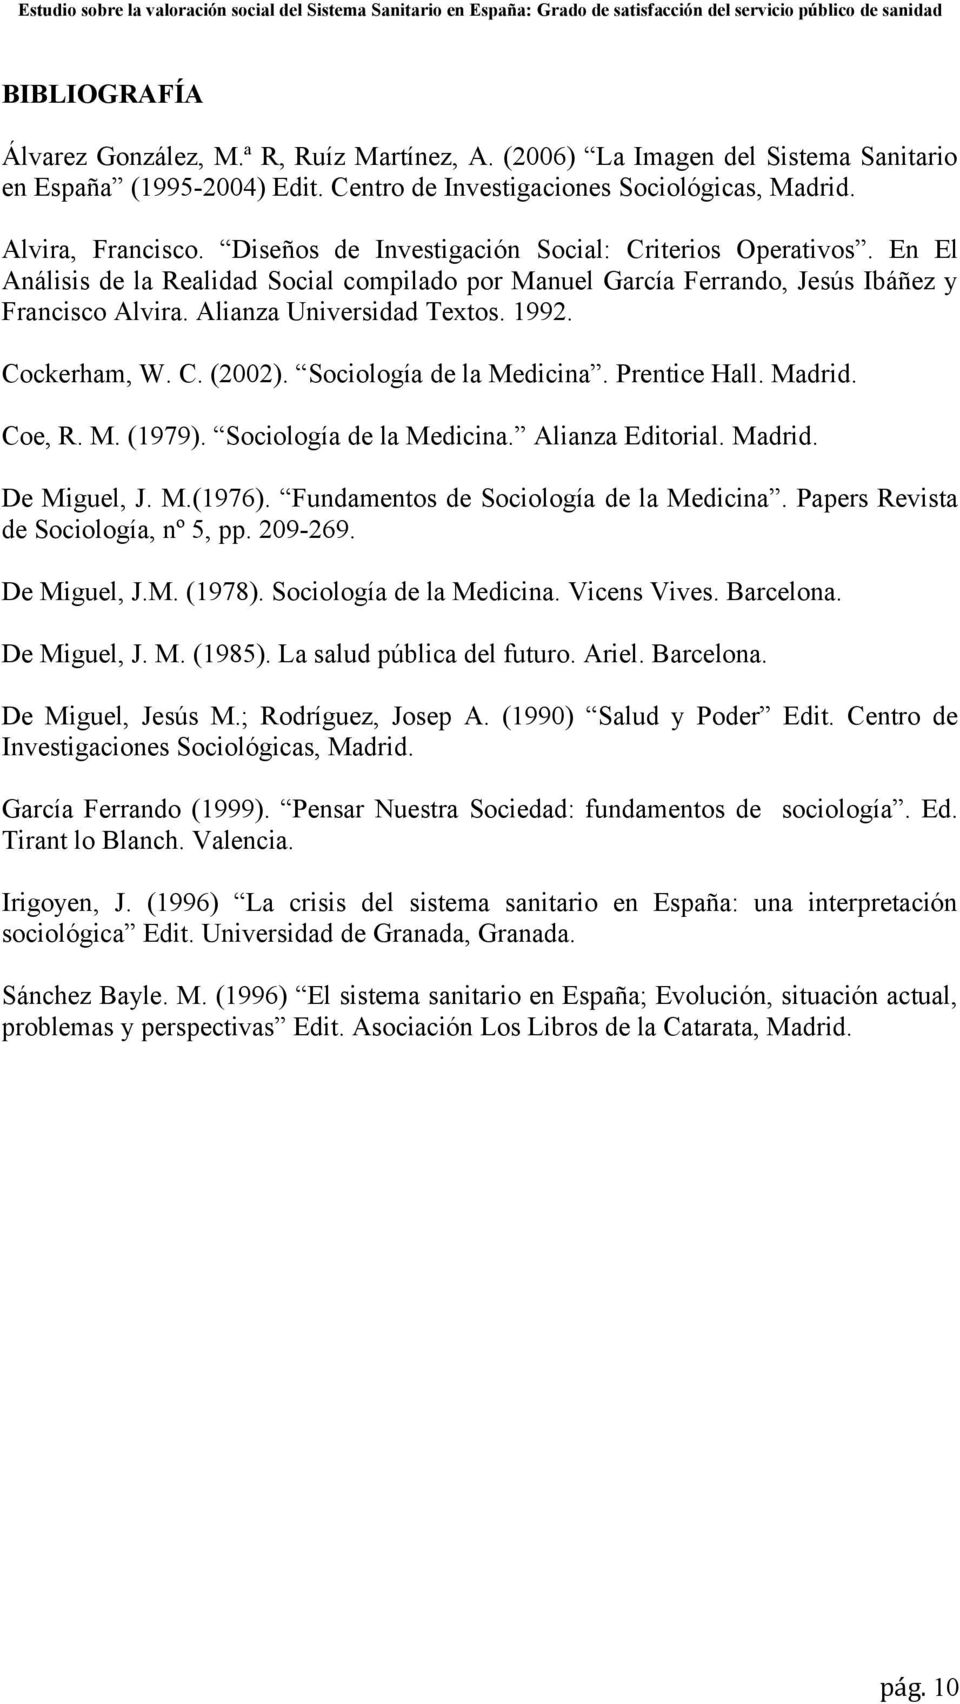 Cockerham, W. C. (2002). Sociología de la Medicina. Prentice Hall. Madrid. Coe, R. M. (1979). Sociología de la Medicina. Alianza Editorial. Madrid. De Miguel, J. M.(1976).